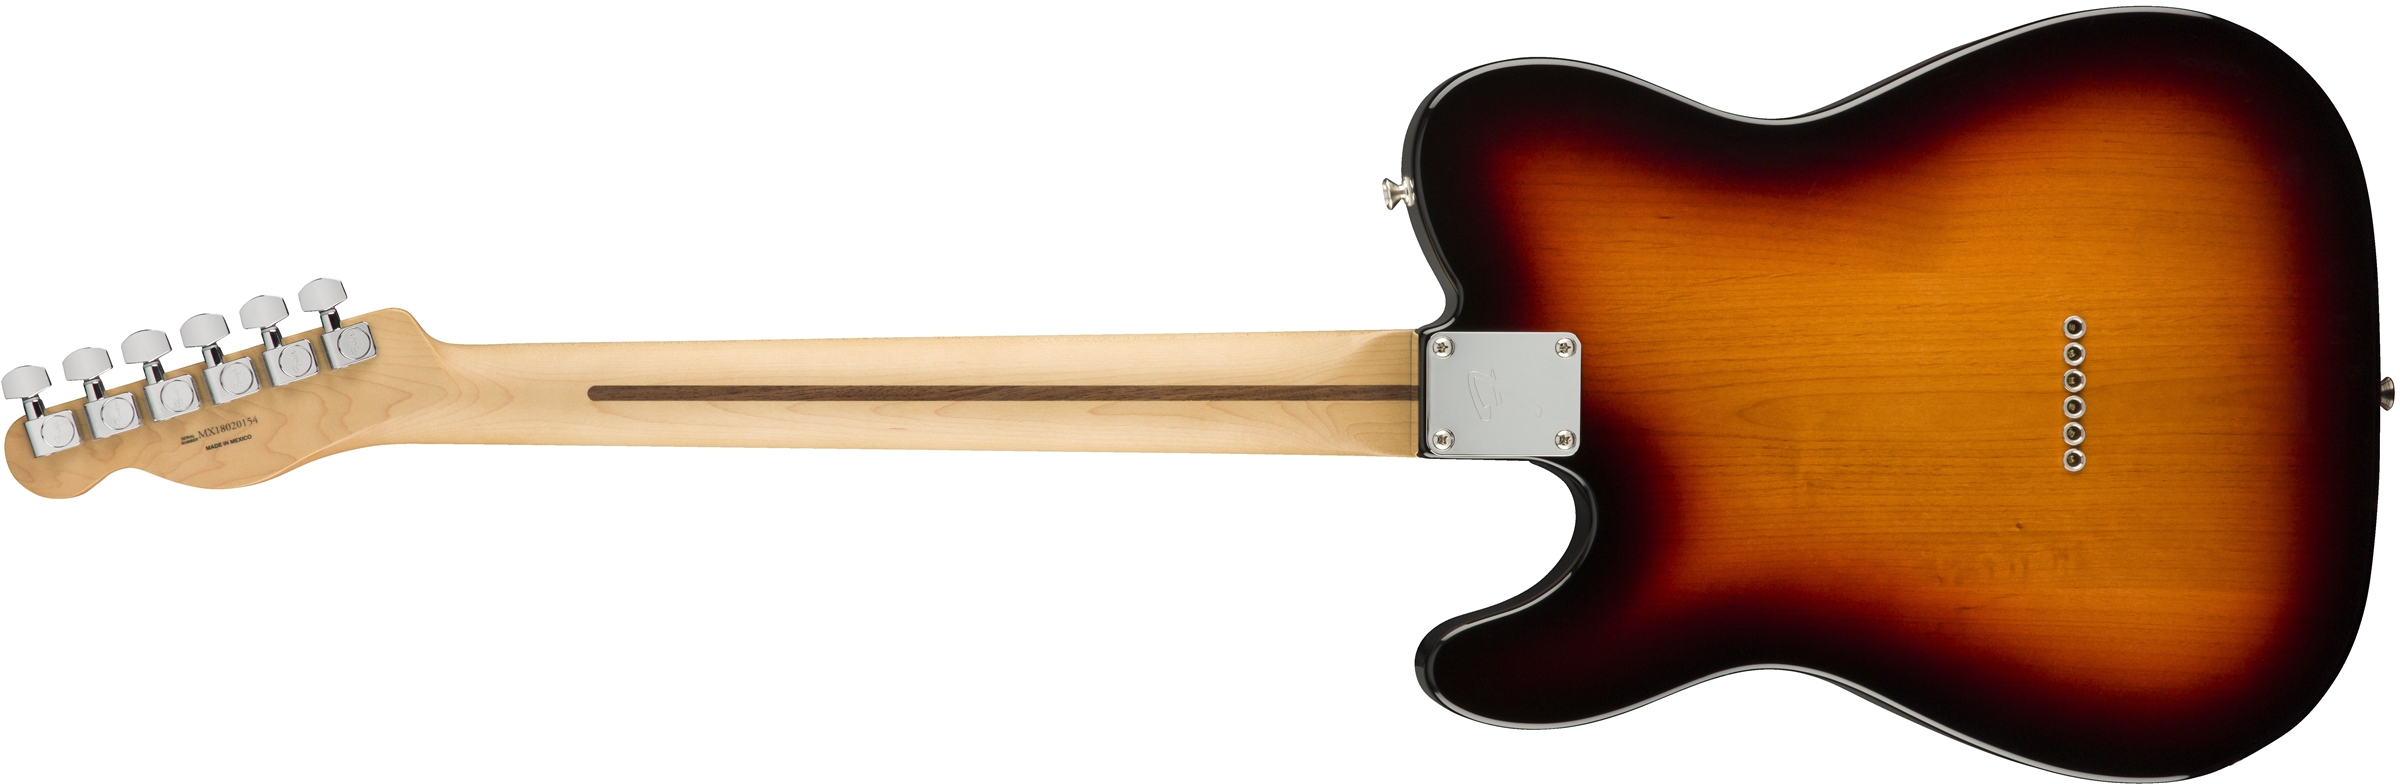 Fender Tele Player Mex Ss Pf - 3-color Sunburst - Guitare Électrique Forme Tel - Variation 1